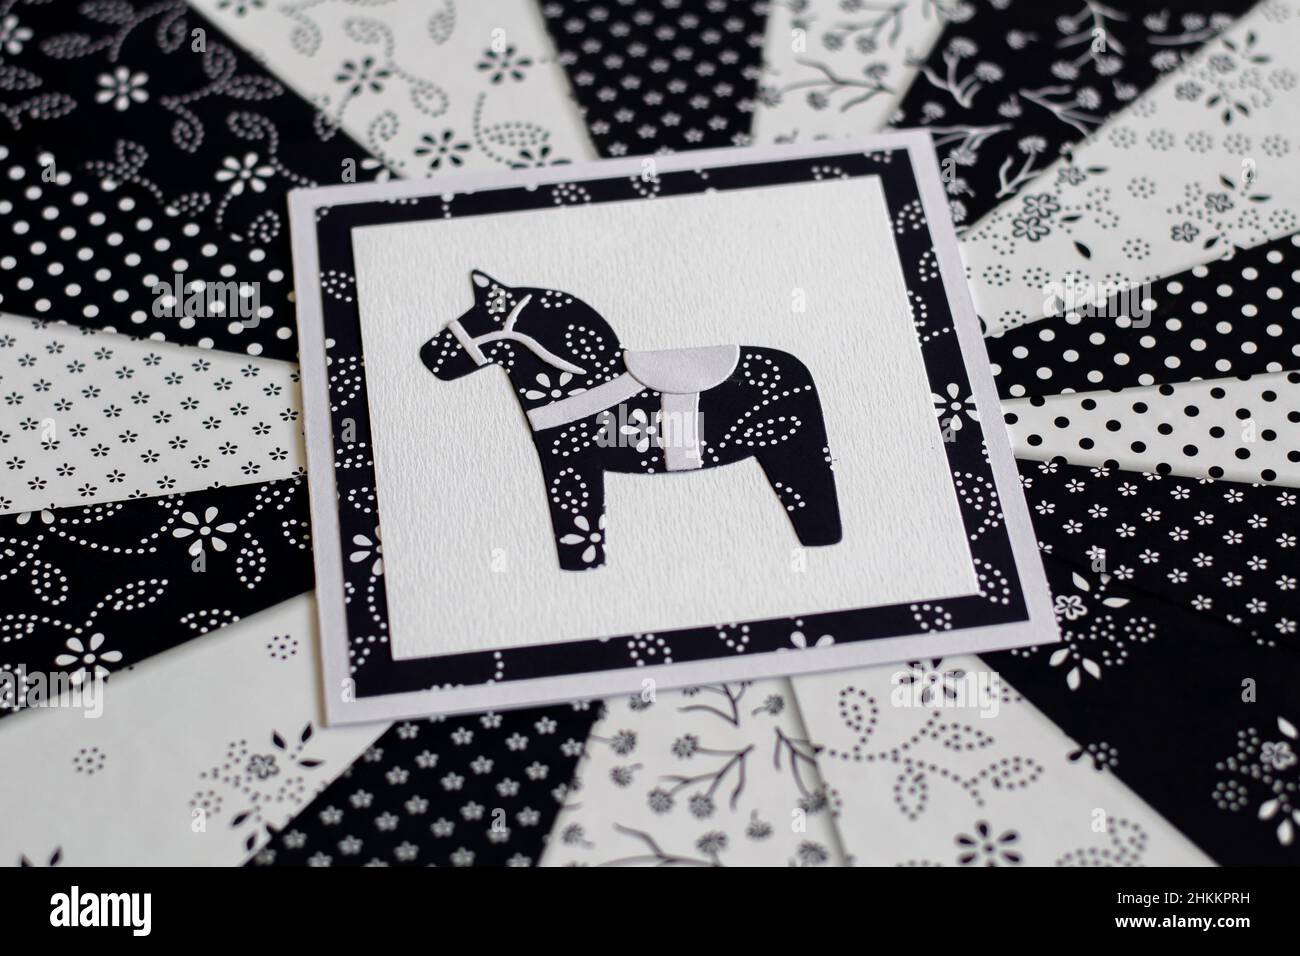 Handgefertigte Grußkarte mit schwedischem Dala- oder Dalakarier-Pferd-Blumenmuster in Schwarz und Weiß. Stockfoto